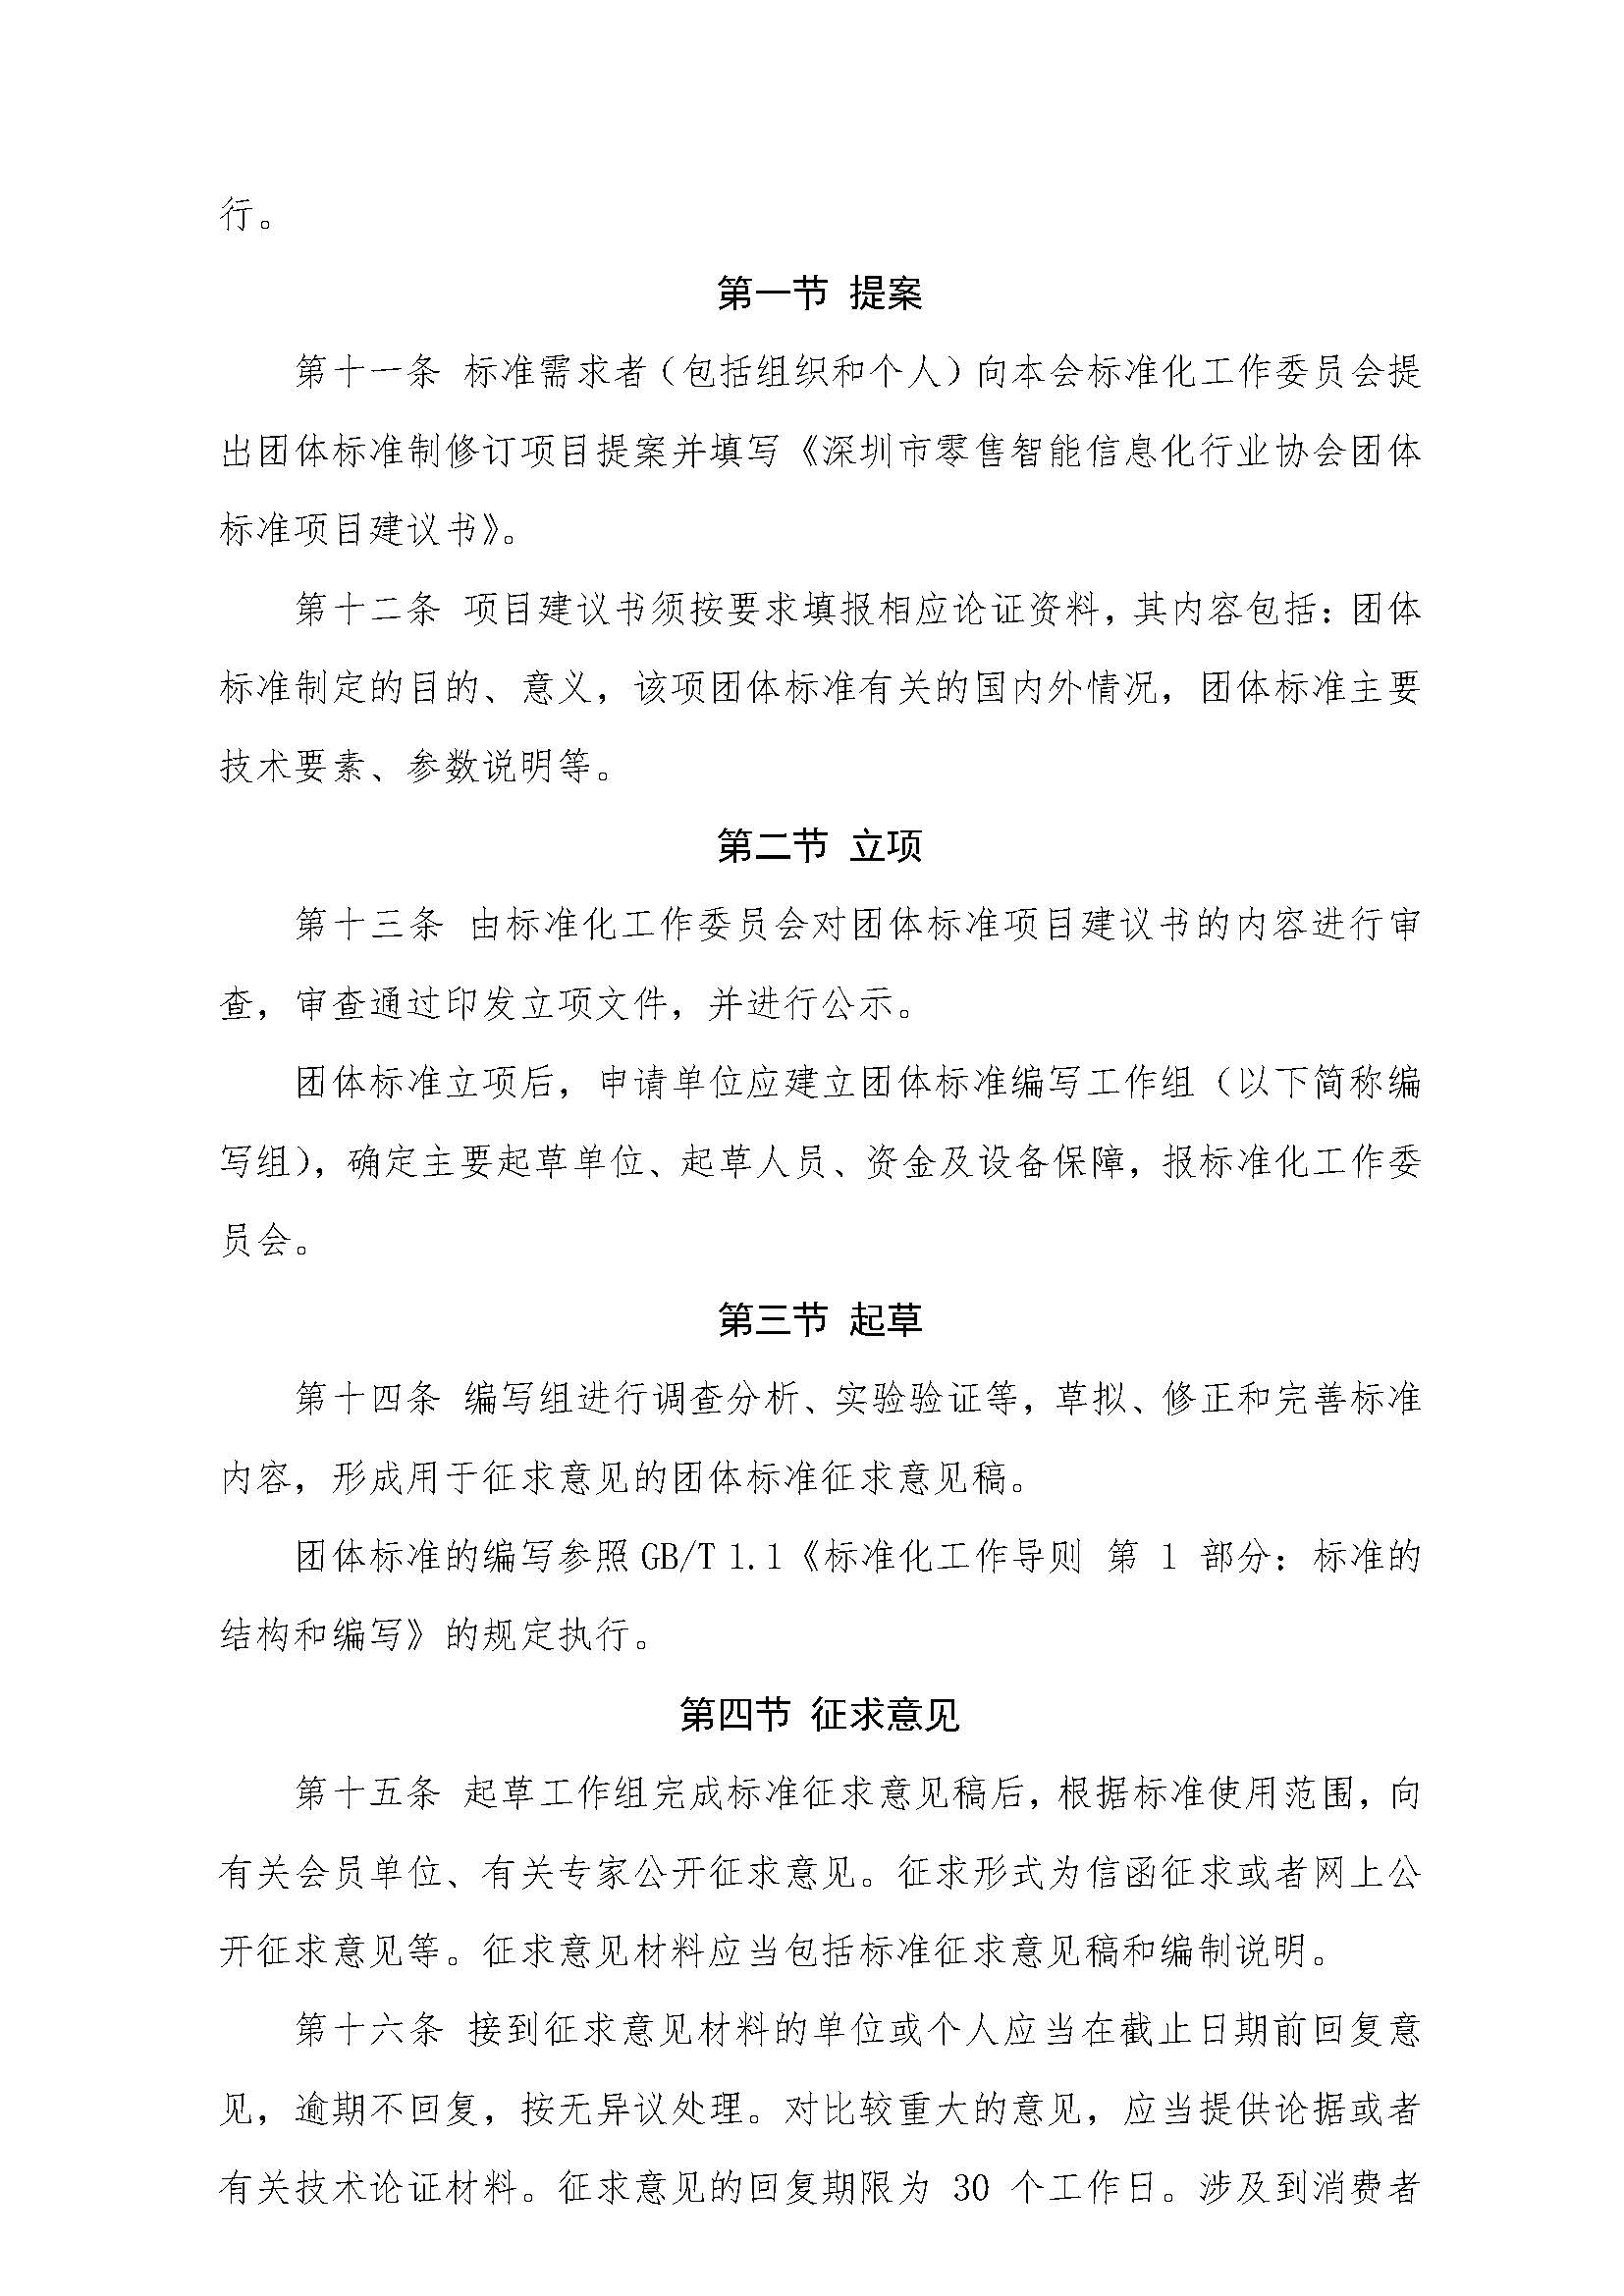 发布通知《深圳市零售智能信息化行业协会团体标准管理办法》_页面_4.jpg